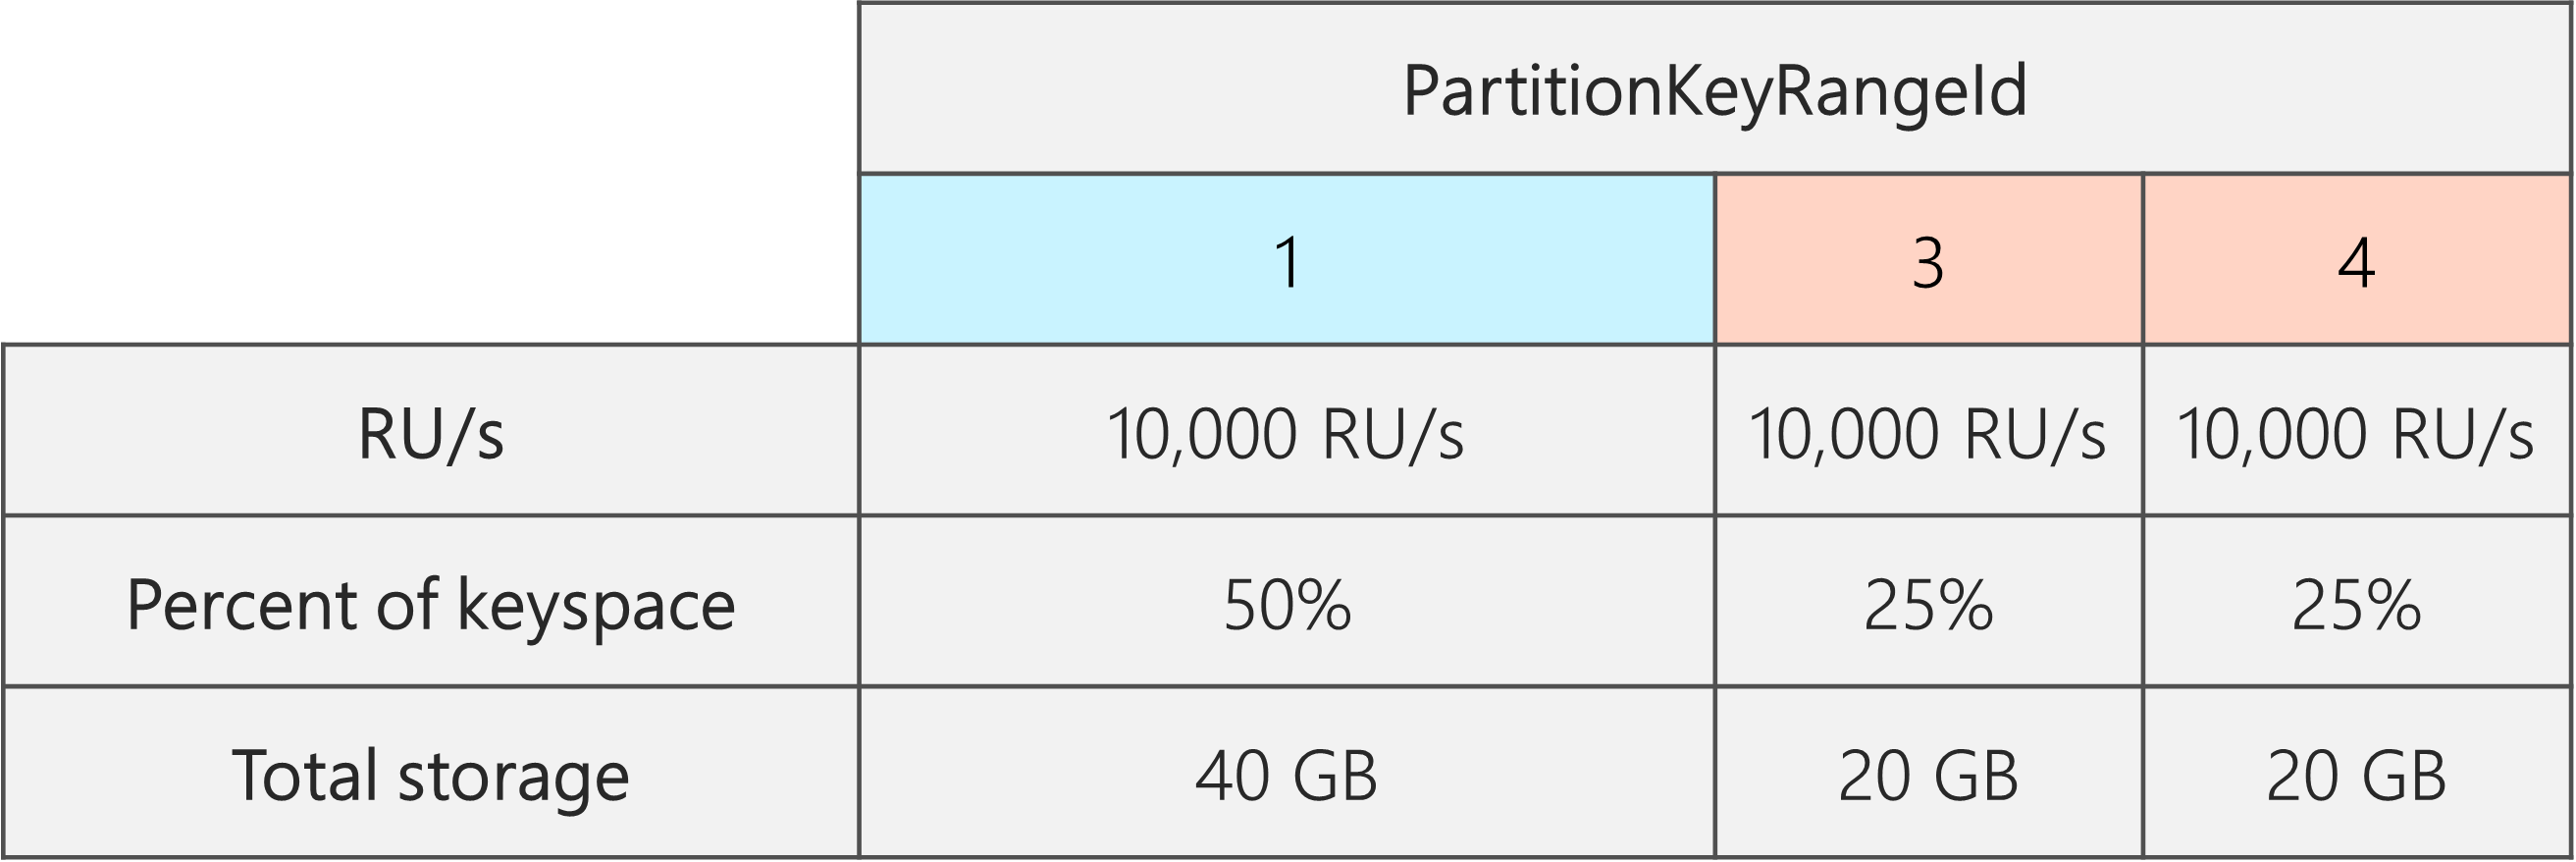 A felosztás után 3 PartitionKeyRangeId található, amelyek mindegyike 10 000 RU/s értékkel van elosztva. Az egyik PartitionKeyRangeIds azonban a teljes kulcstér 50%-át (40 GB) használja, míg a PartitionKeyRangeIdek közül kettő a teljes kulcstér 25%-át (20 GB)